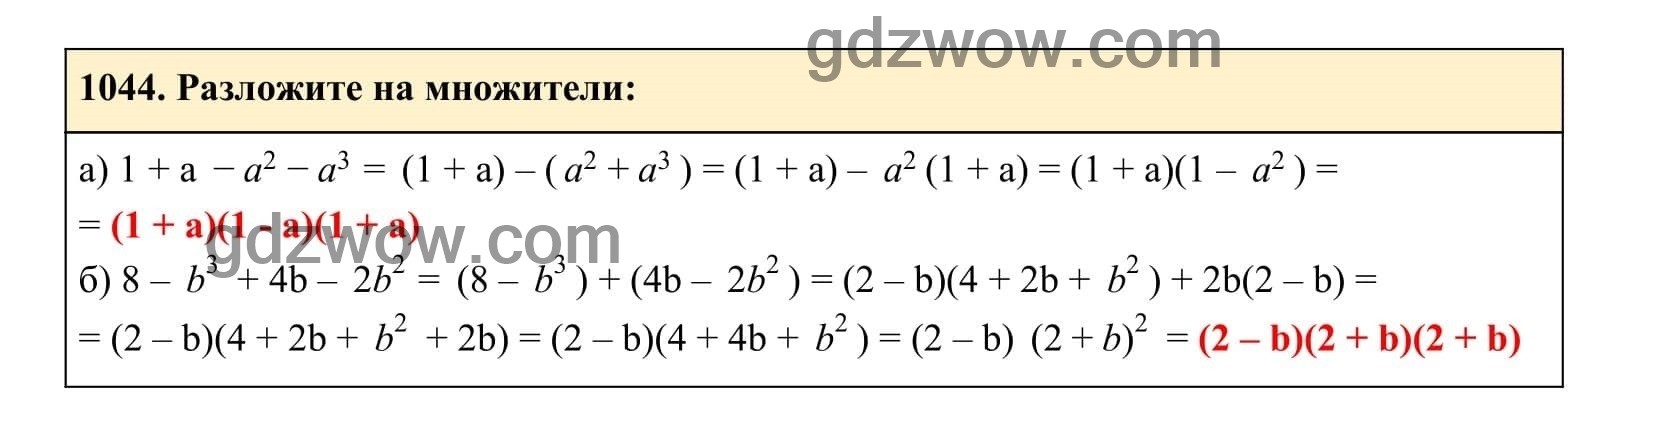 Упражнение 1044 - ГДЗ по Алгебре 7 класс Учебник Макарычев (решебник) - GDZwow